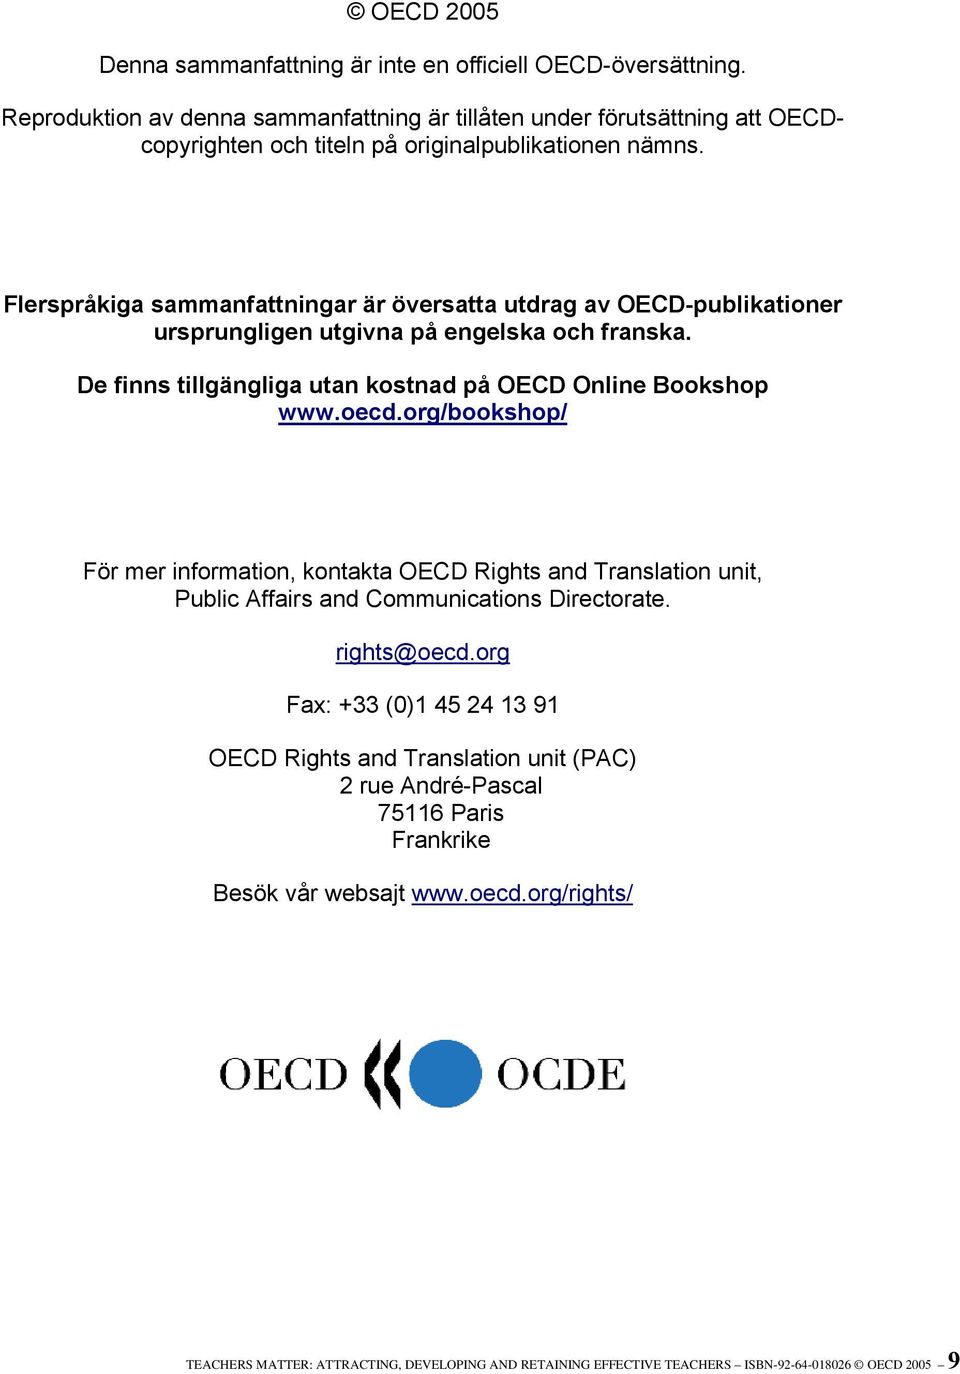 Flerspråkiga sammanfattningar är översatta utdrag av OECD-publikationer ursprungligen utgivna på engelska och franska. De finns tillgängliga utan kostnad på OECD Online Bookshop www.oecd.